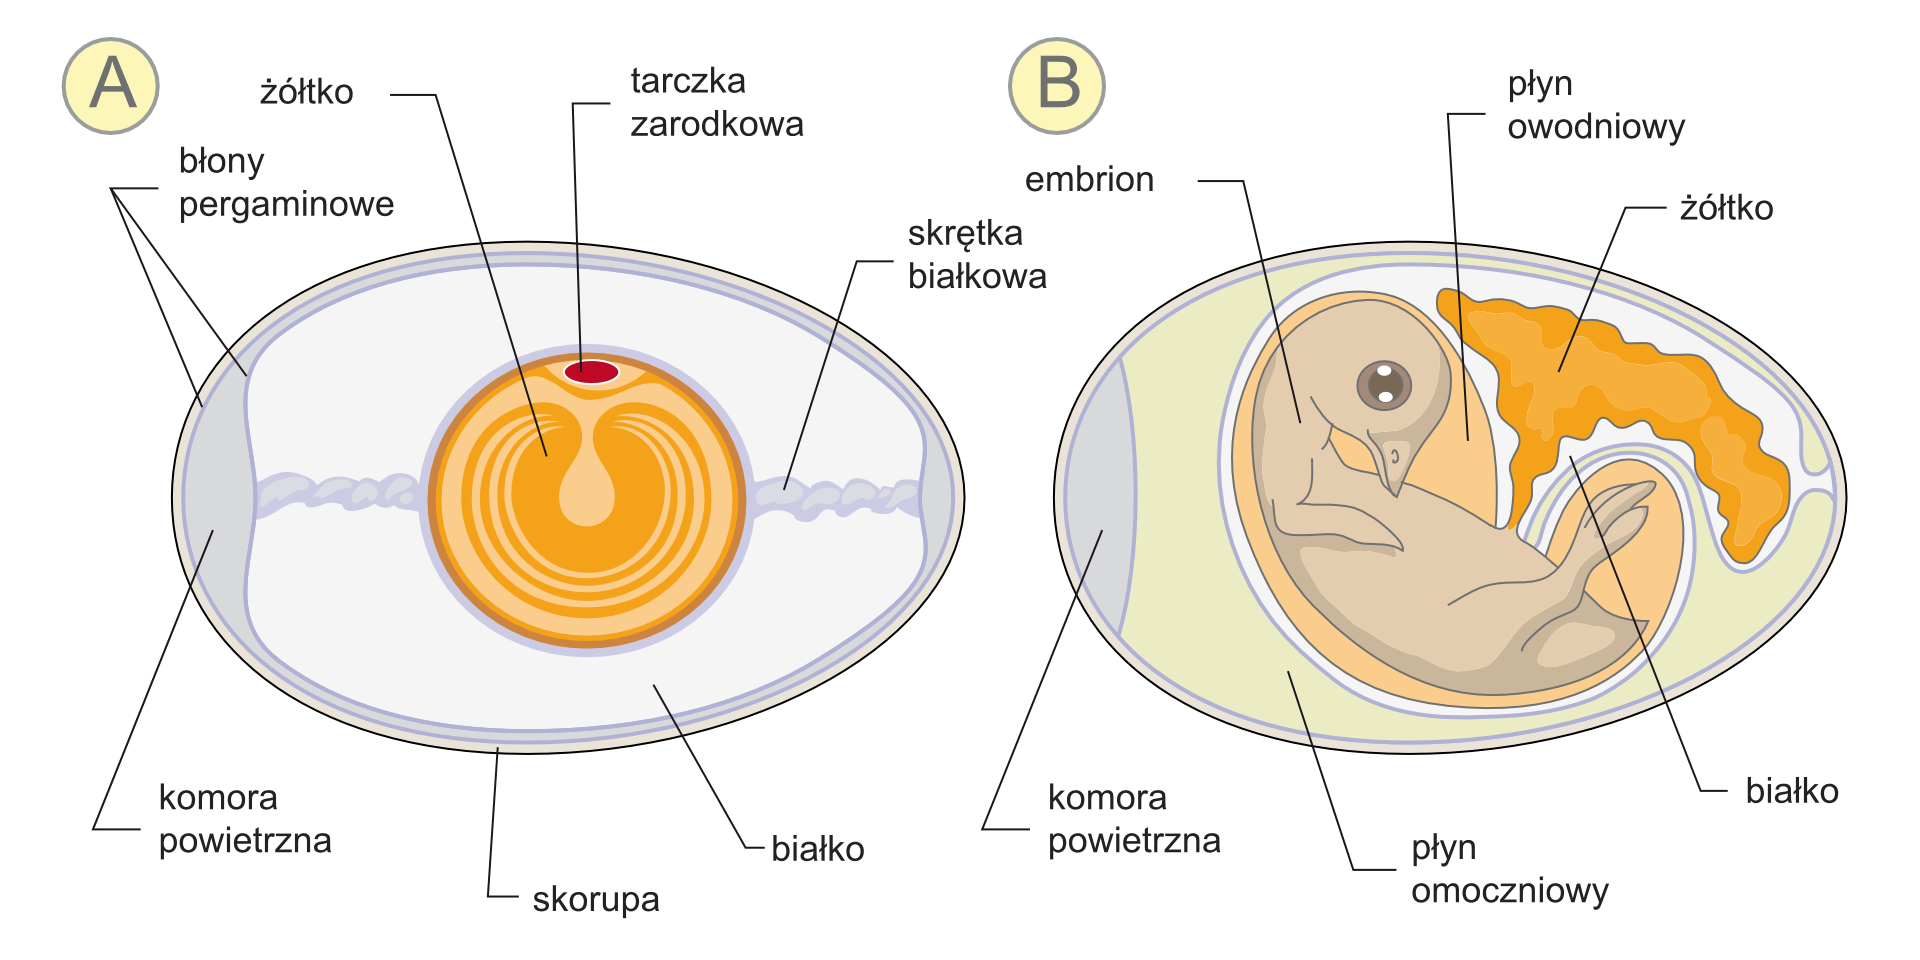 Galeria zawiera ilustracje, przedstawiające budowę kurzego jaja przed i po zapłodnieniu.Dwa rysunki obok siebie ukazują części jaja niezapłodnionego i zawierającego embrion. Te same części mają tę samą barwę. W jaju z lewej na szaro zaznaczono białko. W poziomie ciemniejszym kolorem oznaczono skrętki białkowe, a po lewej komorę powietrzną. Podpisano niebieskie błony pergaminowe i białą skorupę. W centrum znajduje się kula żółtka z jaśniejszymi kręgami. Na niej czerwona tarczka zarodkowa. W jaju po prawej zmniejszyła się ilość białka a żółtko jest przesunięte w bok i ma nieregularny kształt. W centrum znajduje się zwinięty beżowy zarodek z głową u góry, z dużymi, ciemnymi oczyma. Wokół zarodka pomarańczowy płyn owodniowy i szary płyn omoczniowy.